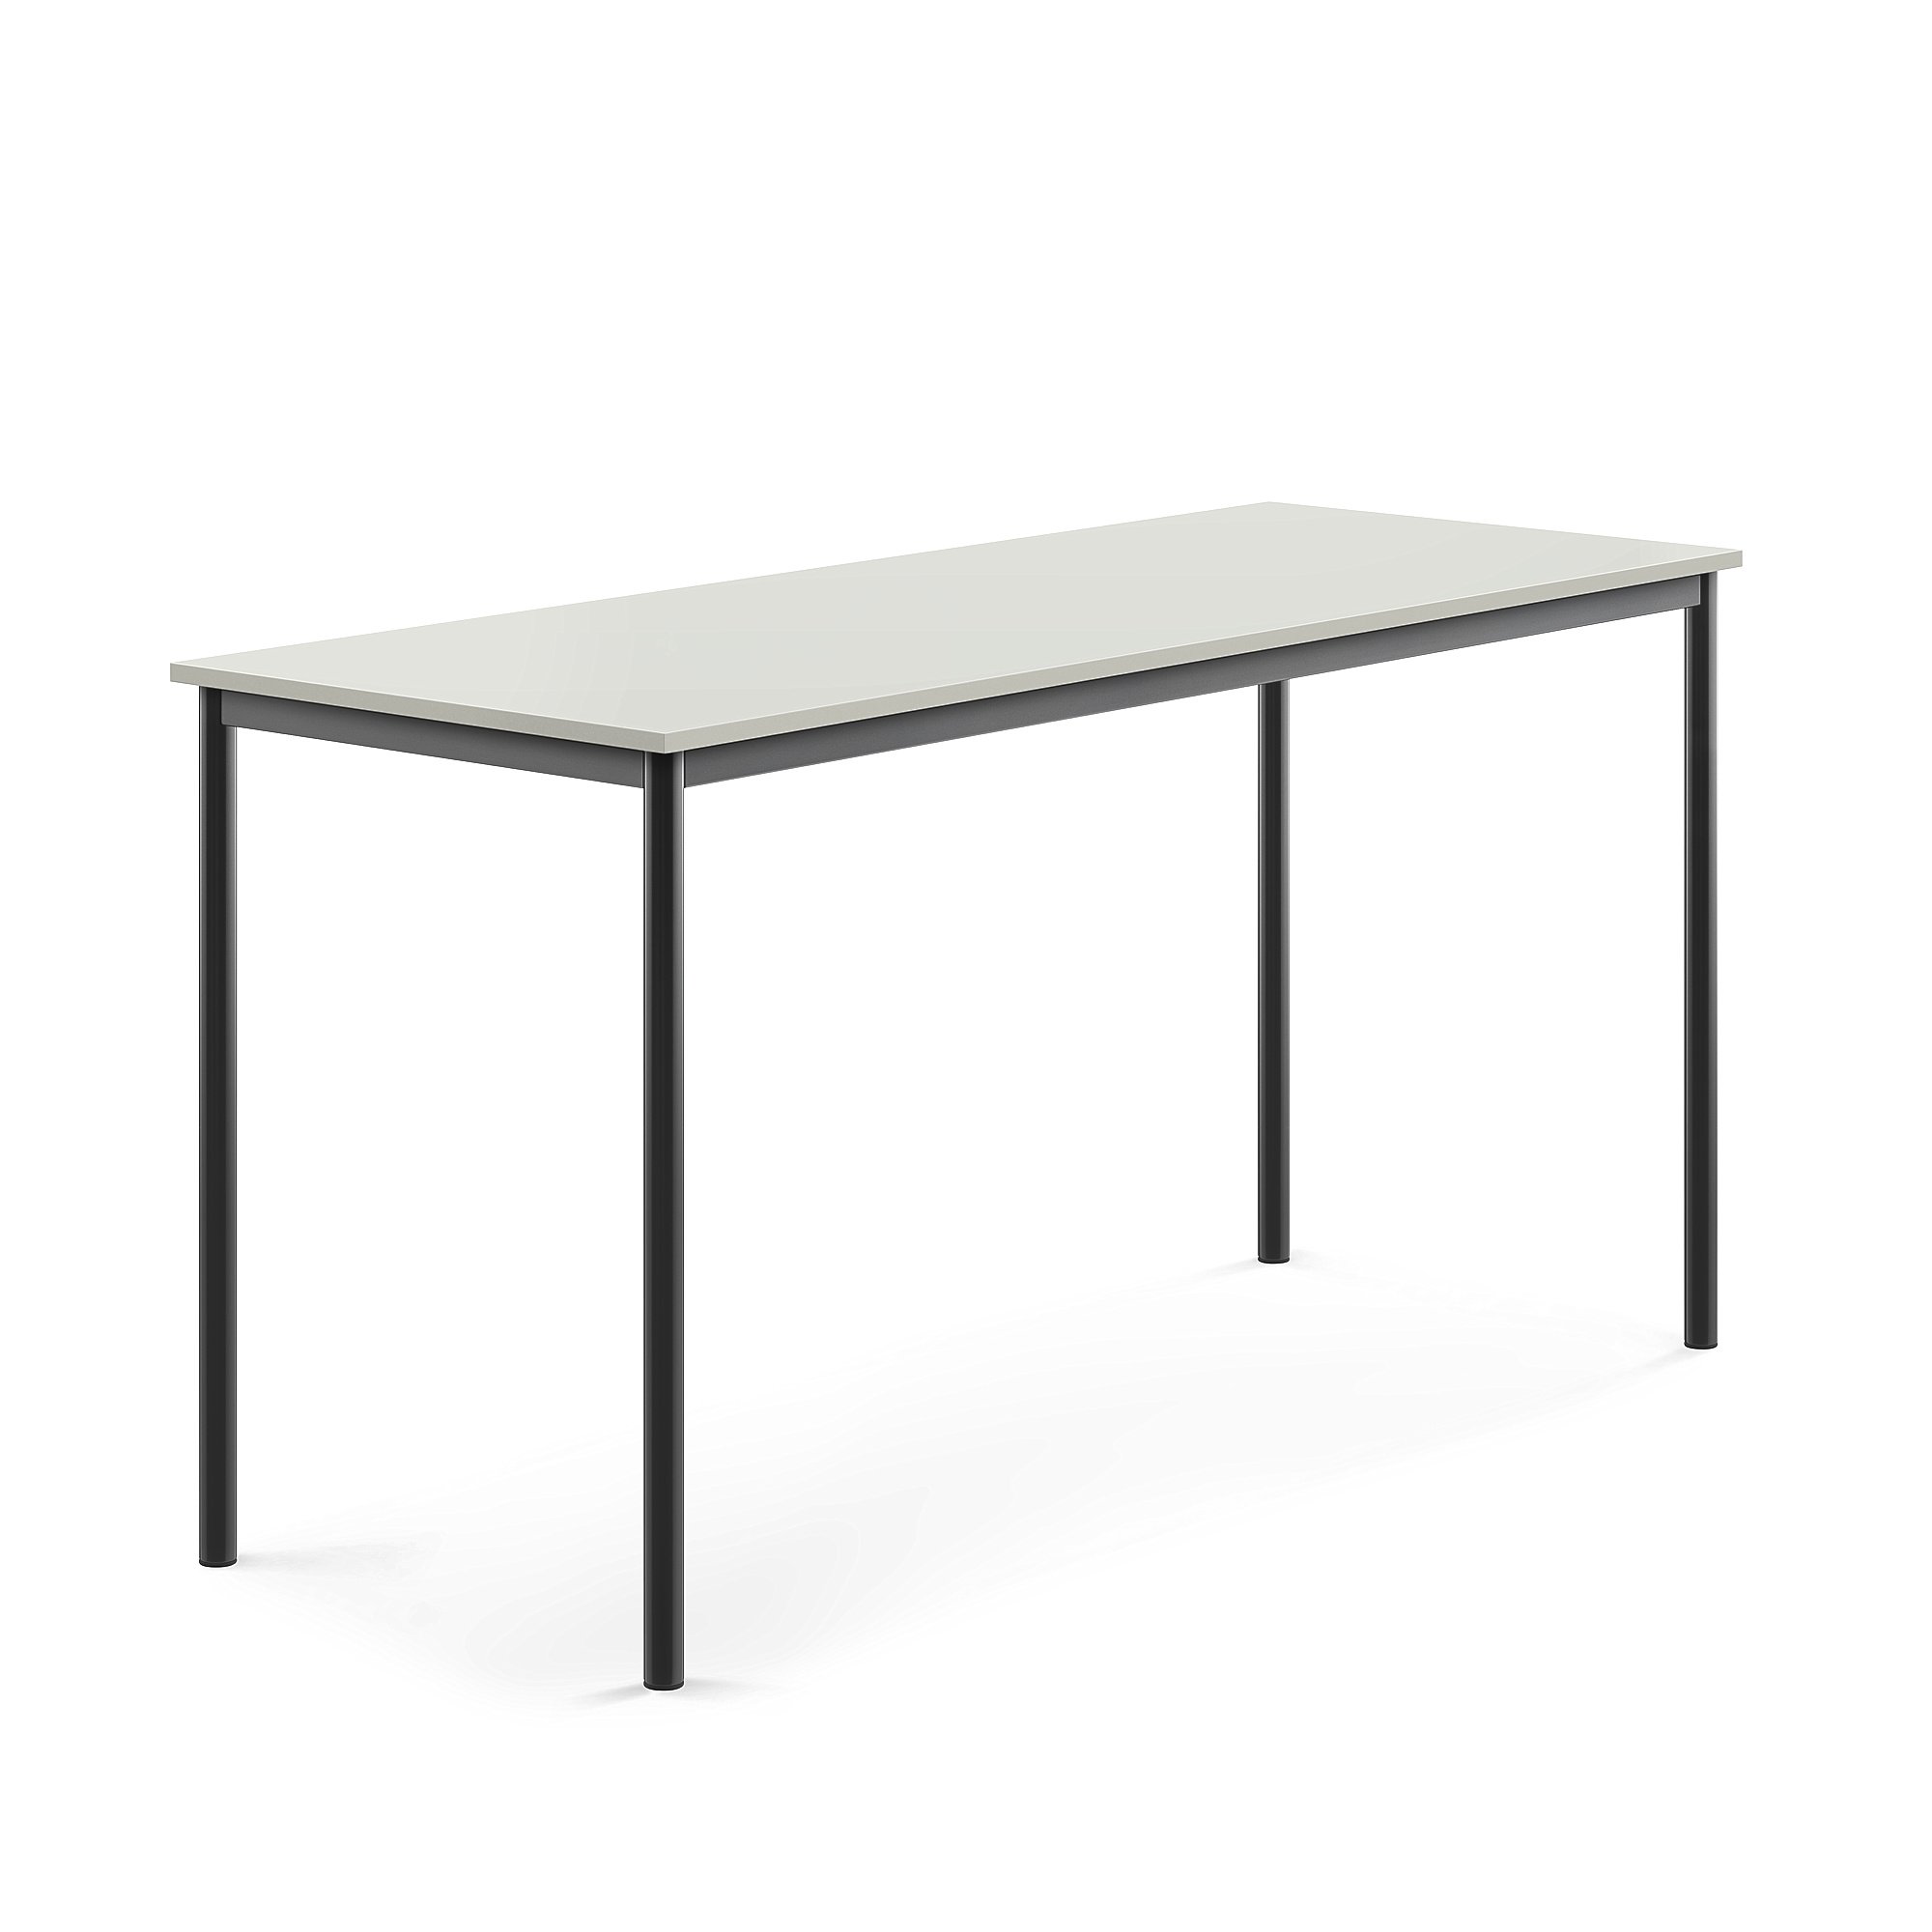 Stůl SONITUS, 1800x700x900 mm, antracitově šedé nohy, HPL deska tlumící hluk, šedá